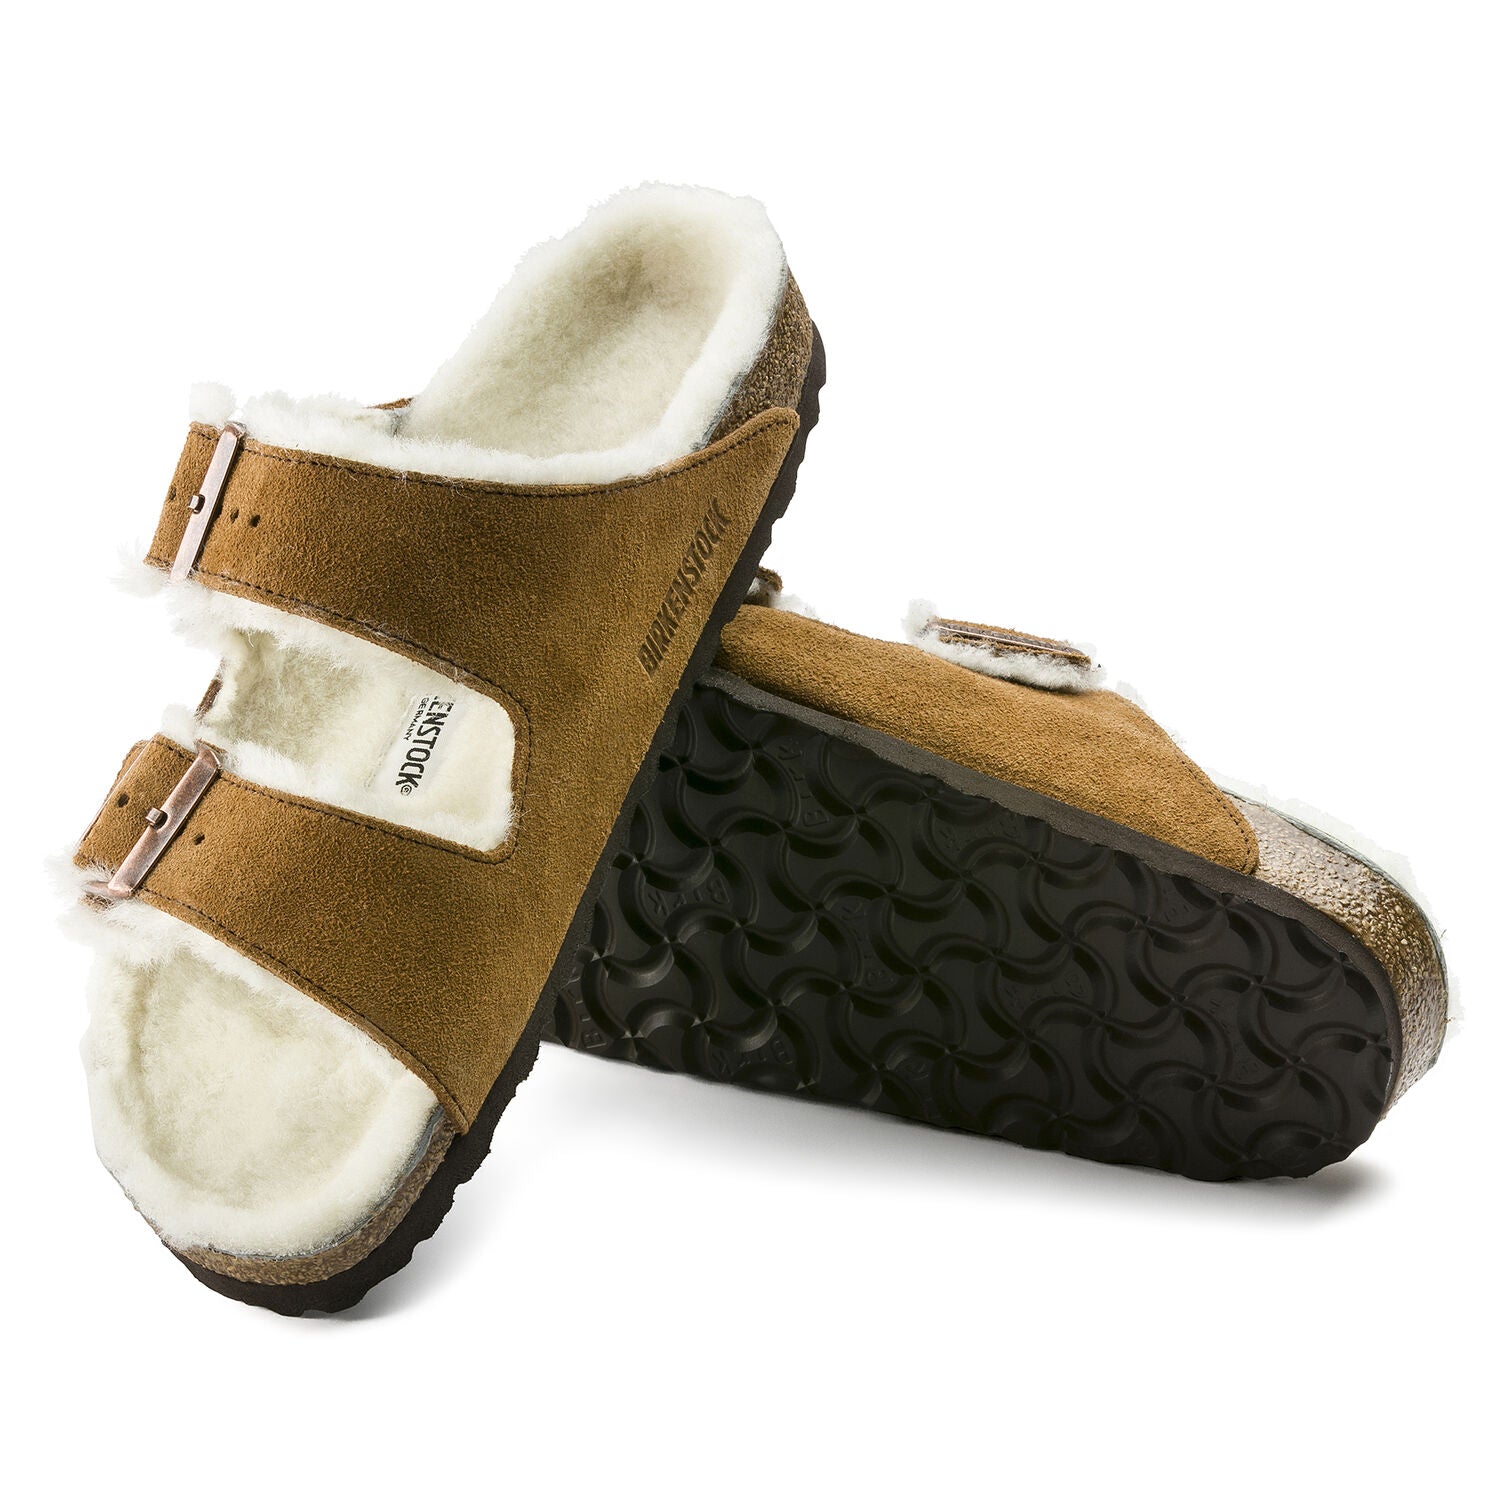 arizona shearling sandal - mink/natural